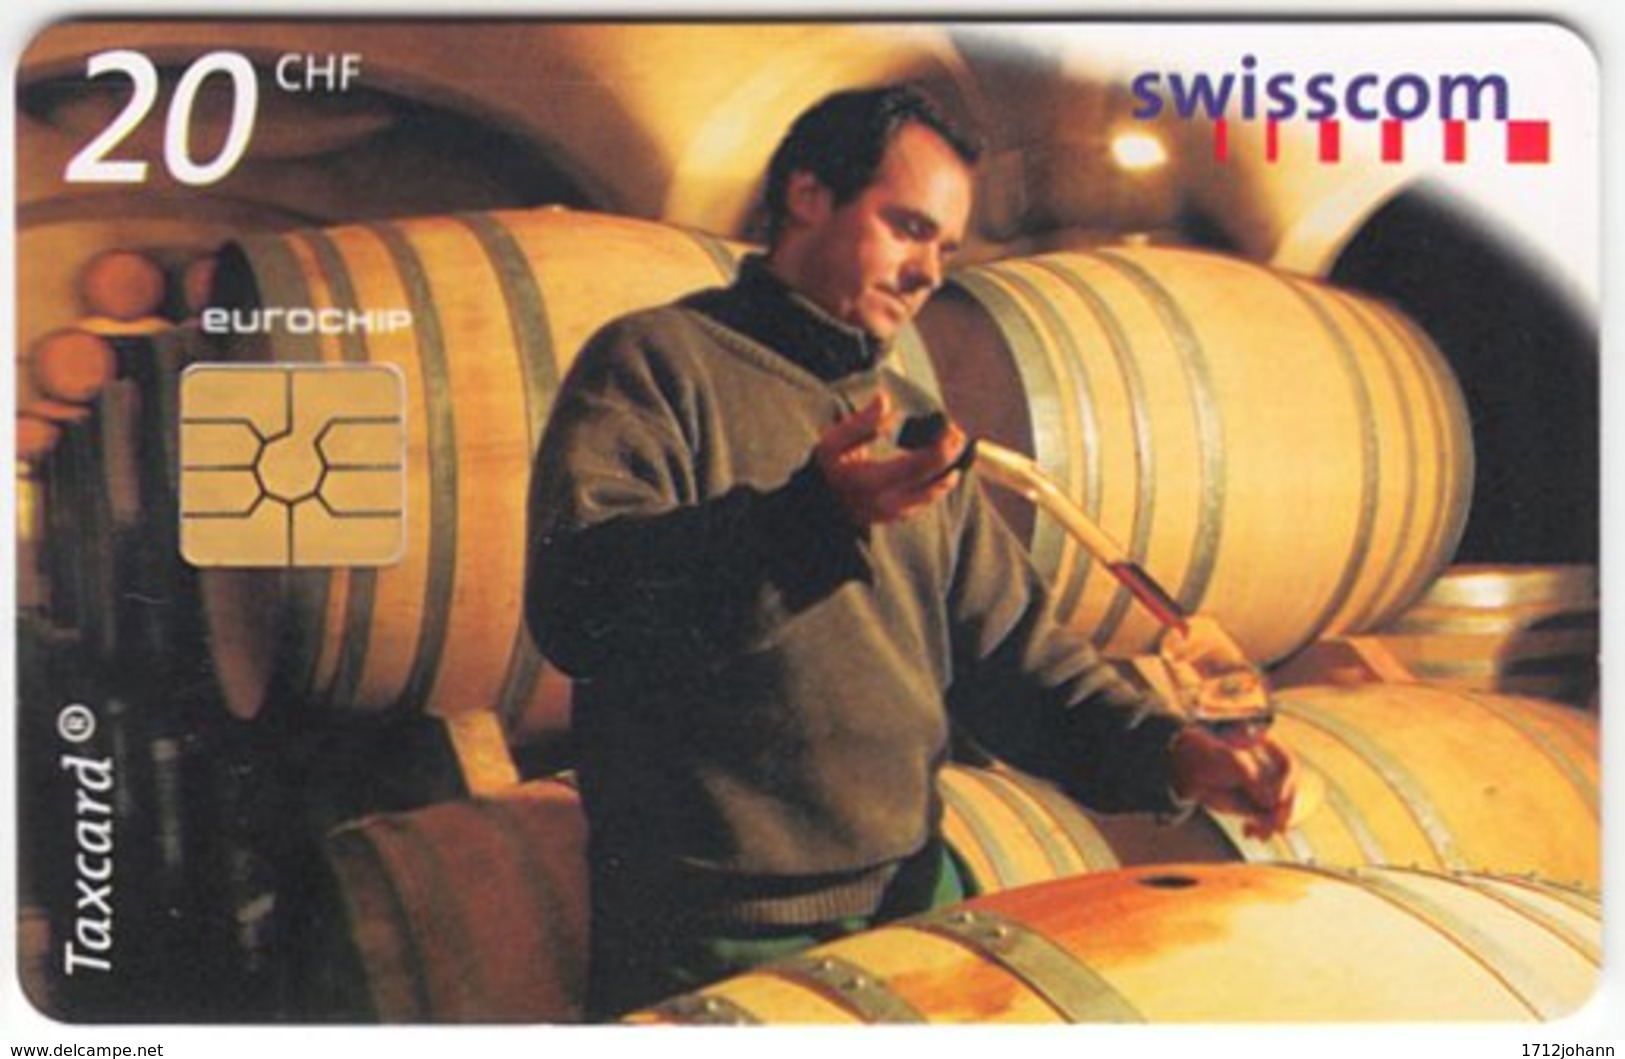 SWITZERLAND C-292 Chip Swisscom - Used - Switzerland